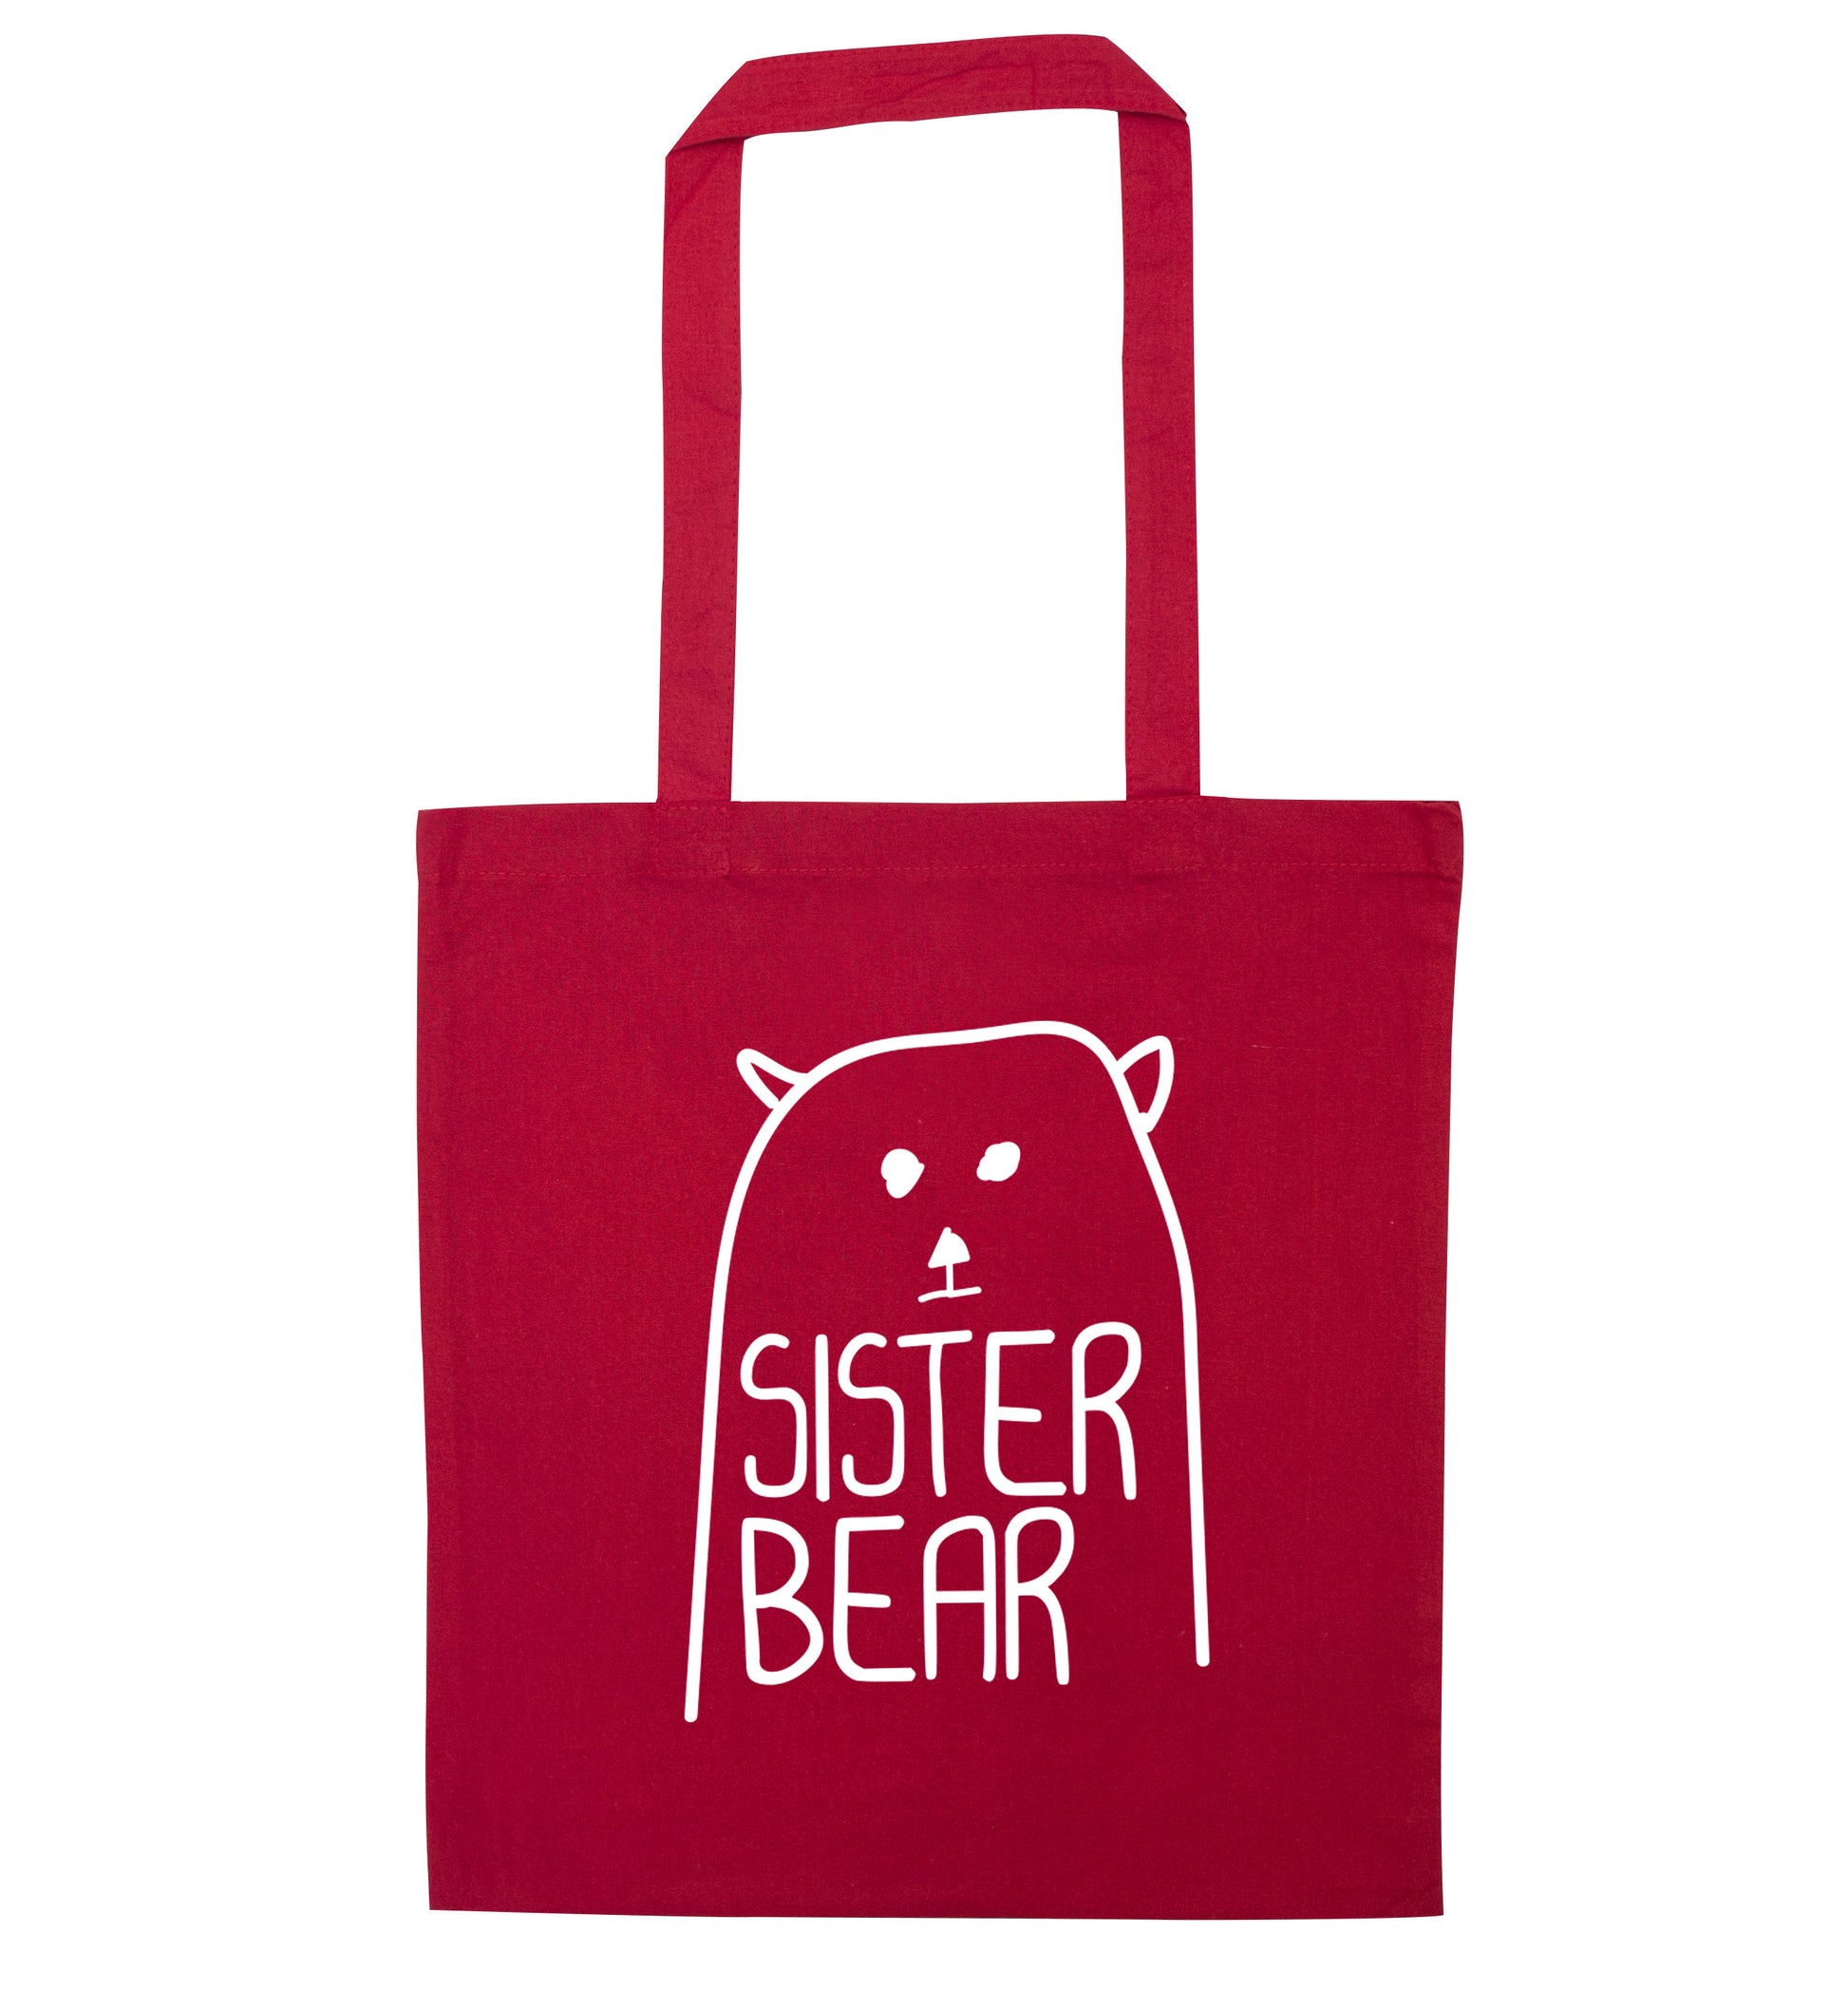 Sister bear red tote bag